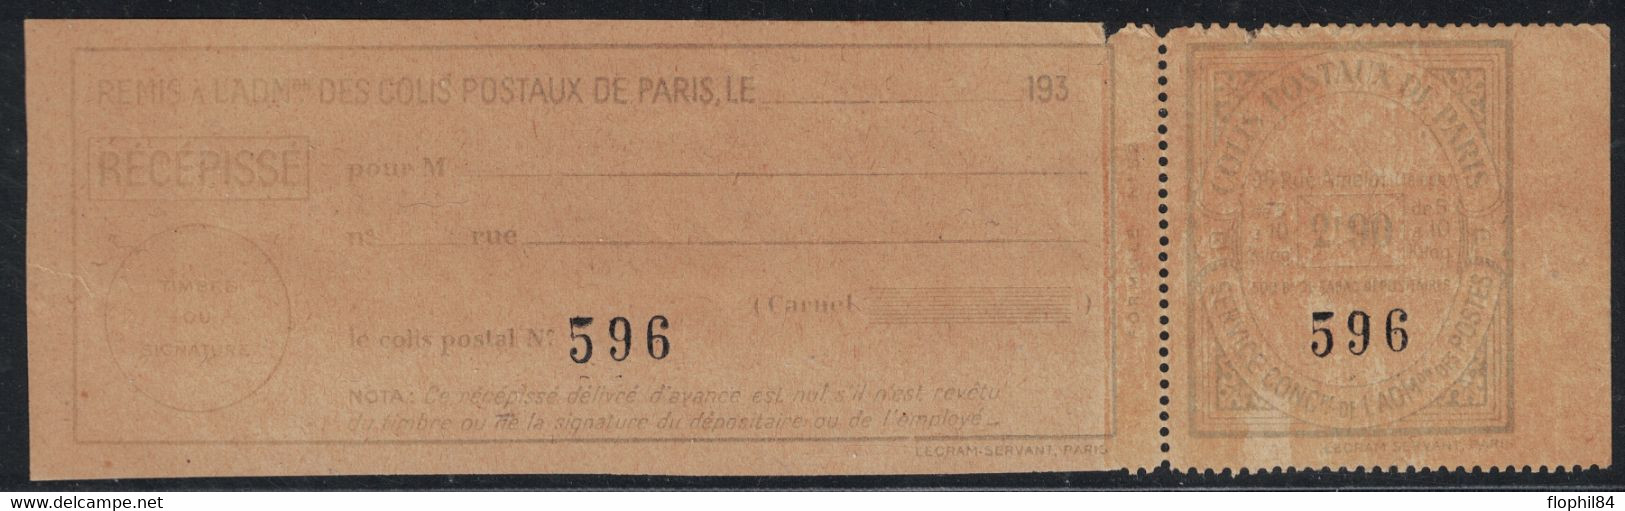 COLIS POSTAUX DE PARIS POUR PARIS - N°153 - 2F90 BLEU CLAIR SUR PAPIER JAUNE (NON SIGNALE ) - COTE DU NORMAL 22€. - Ongebruikt